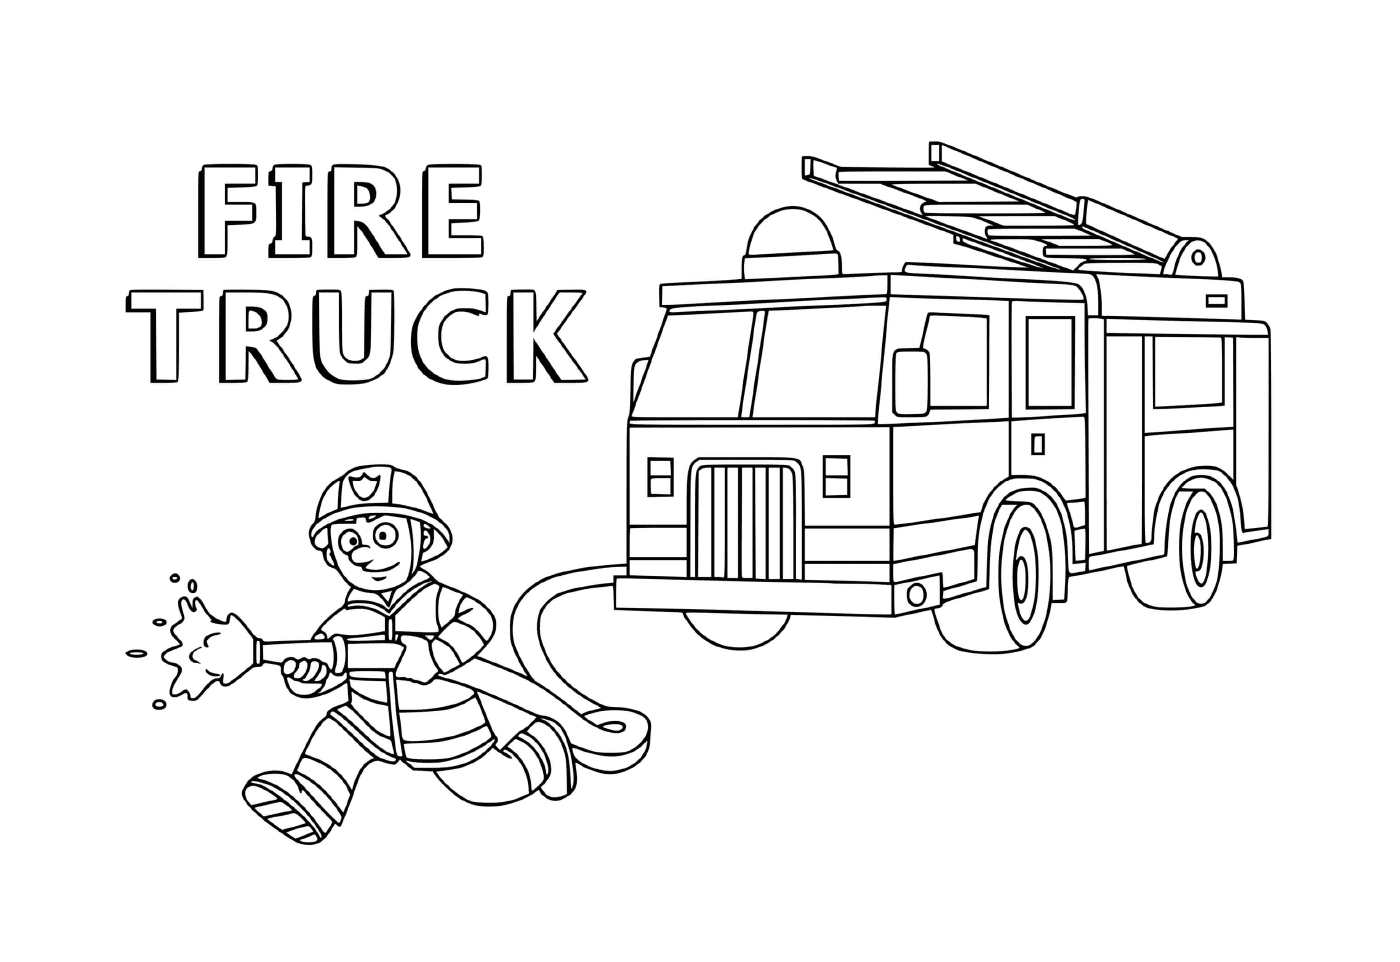  消防员为市民服务的卡车 